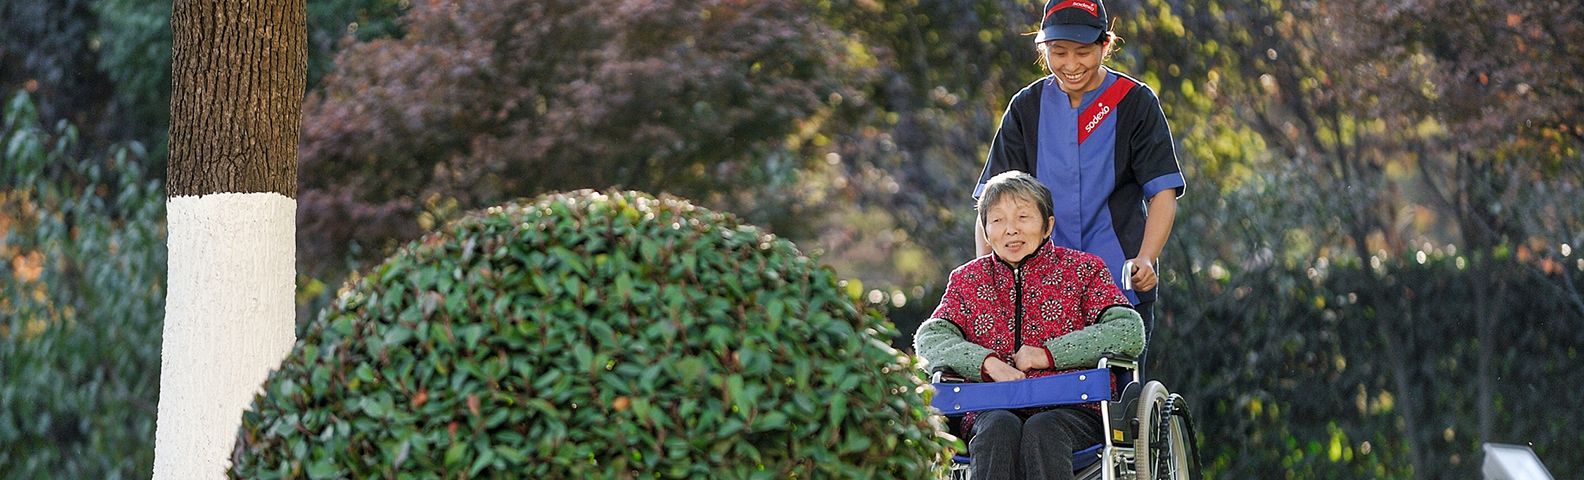 Sodexo employee pushing an elderly woman in a wheelchair through a garden